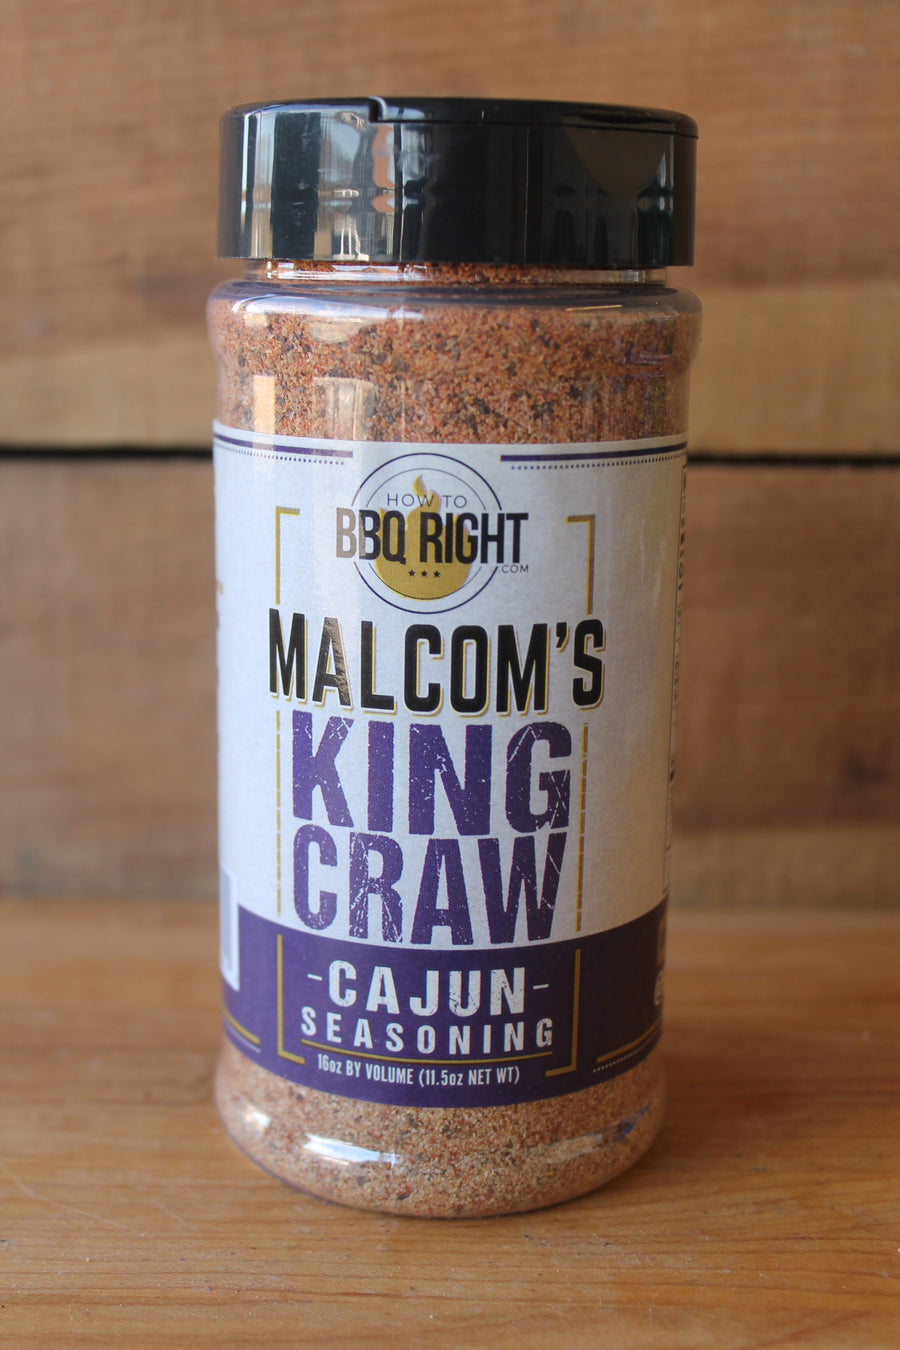 Malcom's "King Craw" Cajun Seasoning